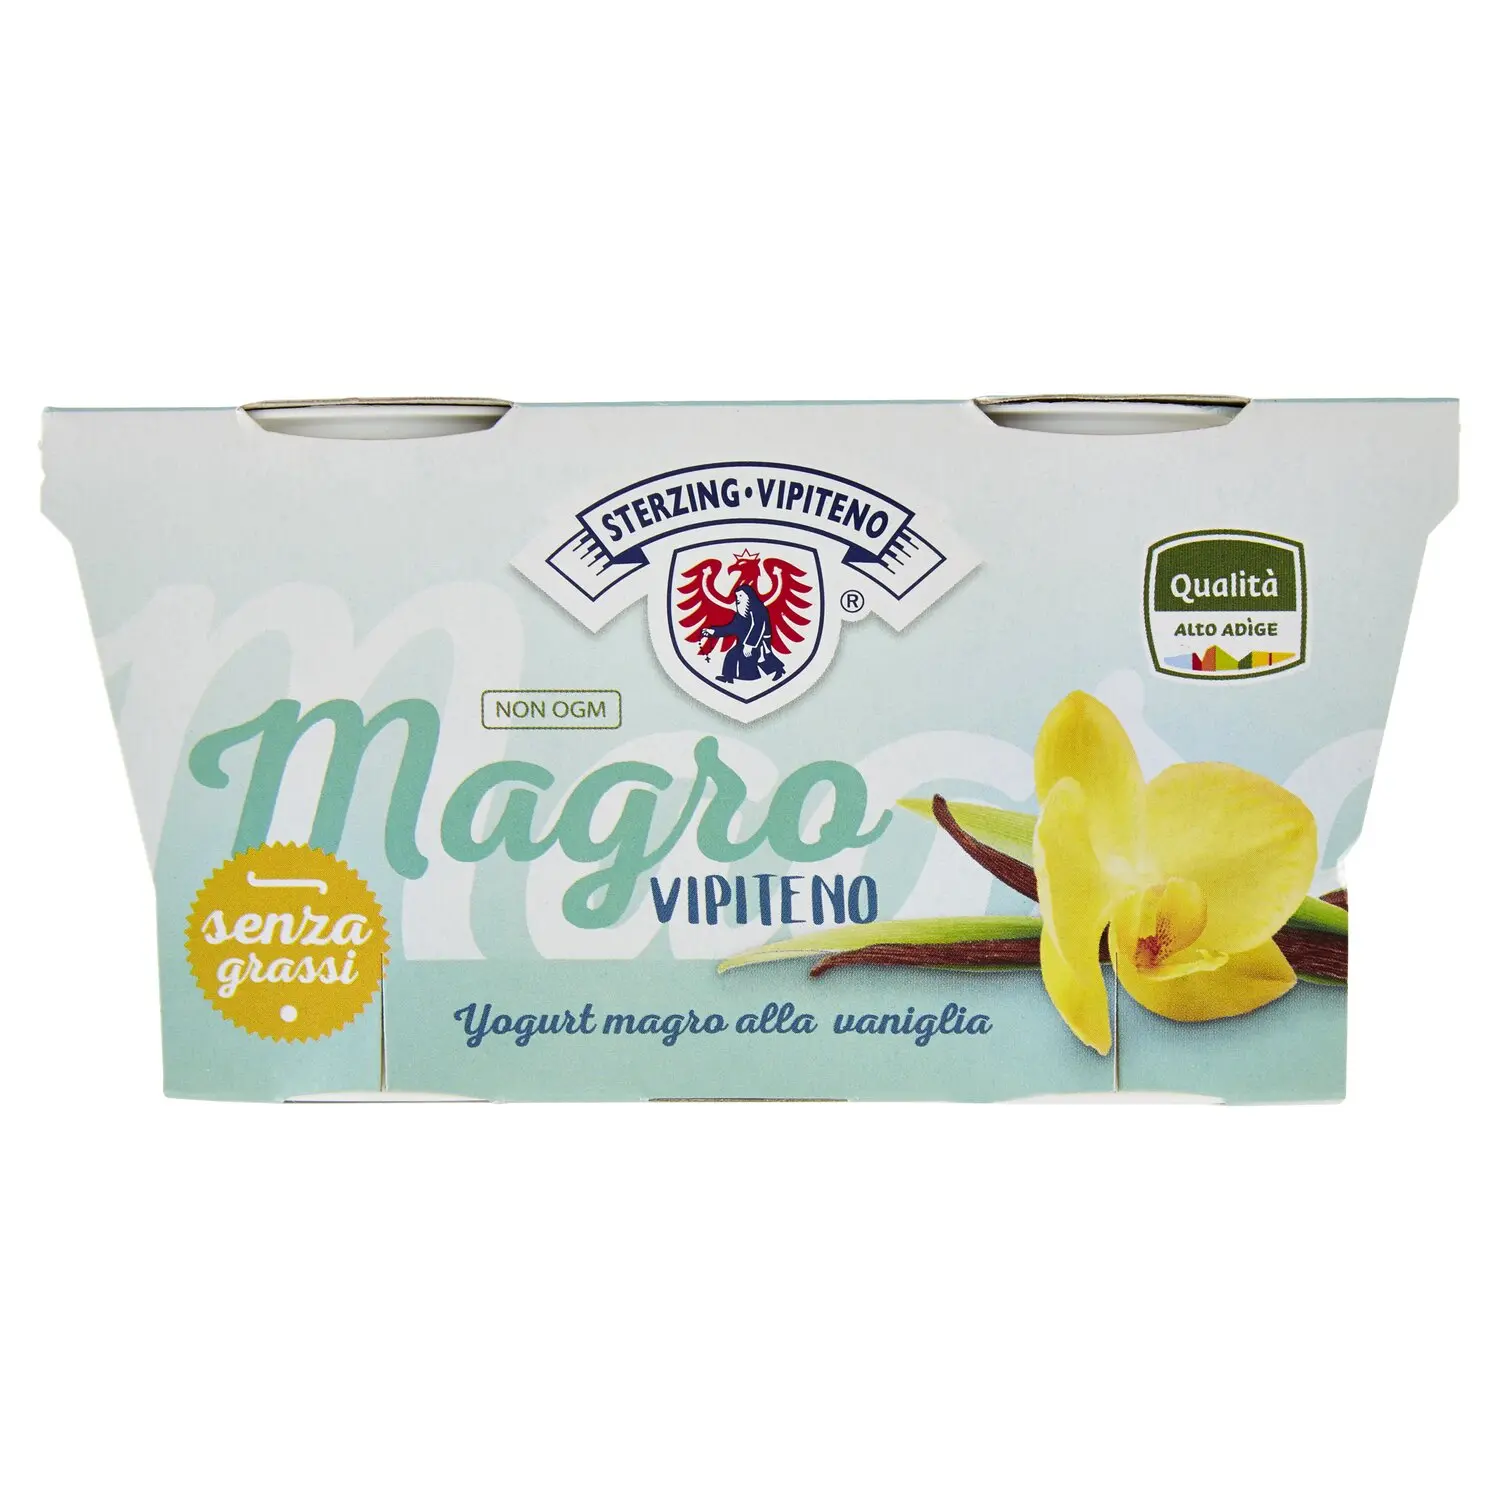 Sterzing Vipiteno Magro Vipiteno Yogurt magro alla vaniglia 2 x 125 g